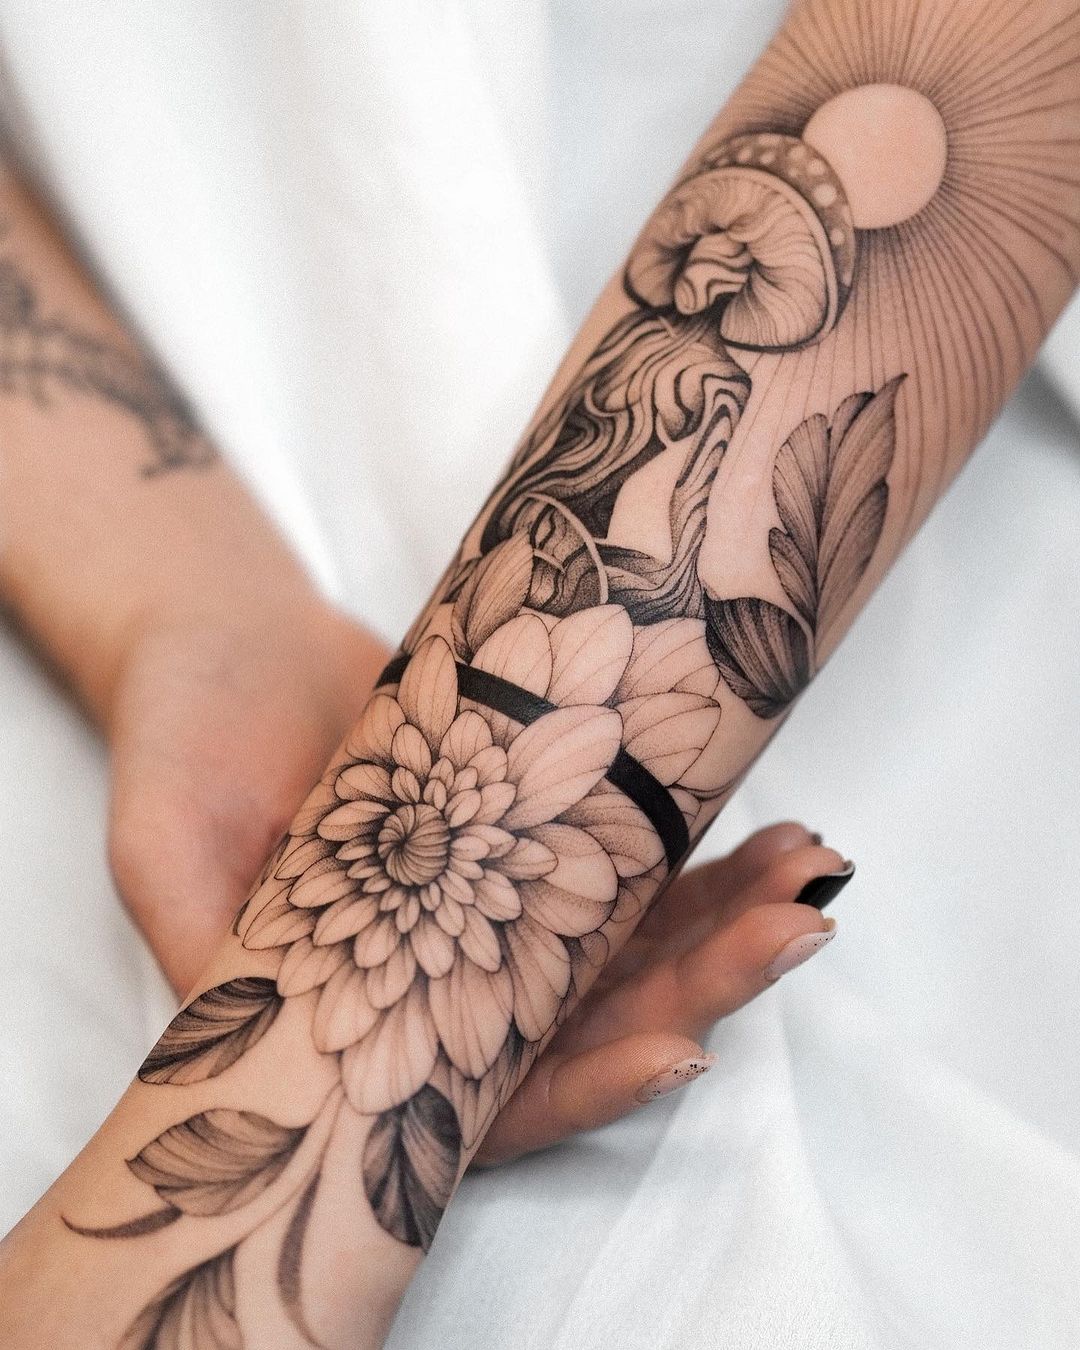 Mushroom tattoo on arm by natalia musiol